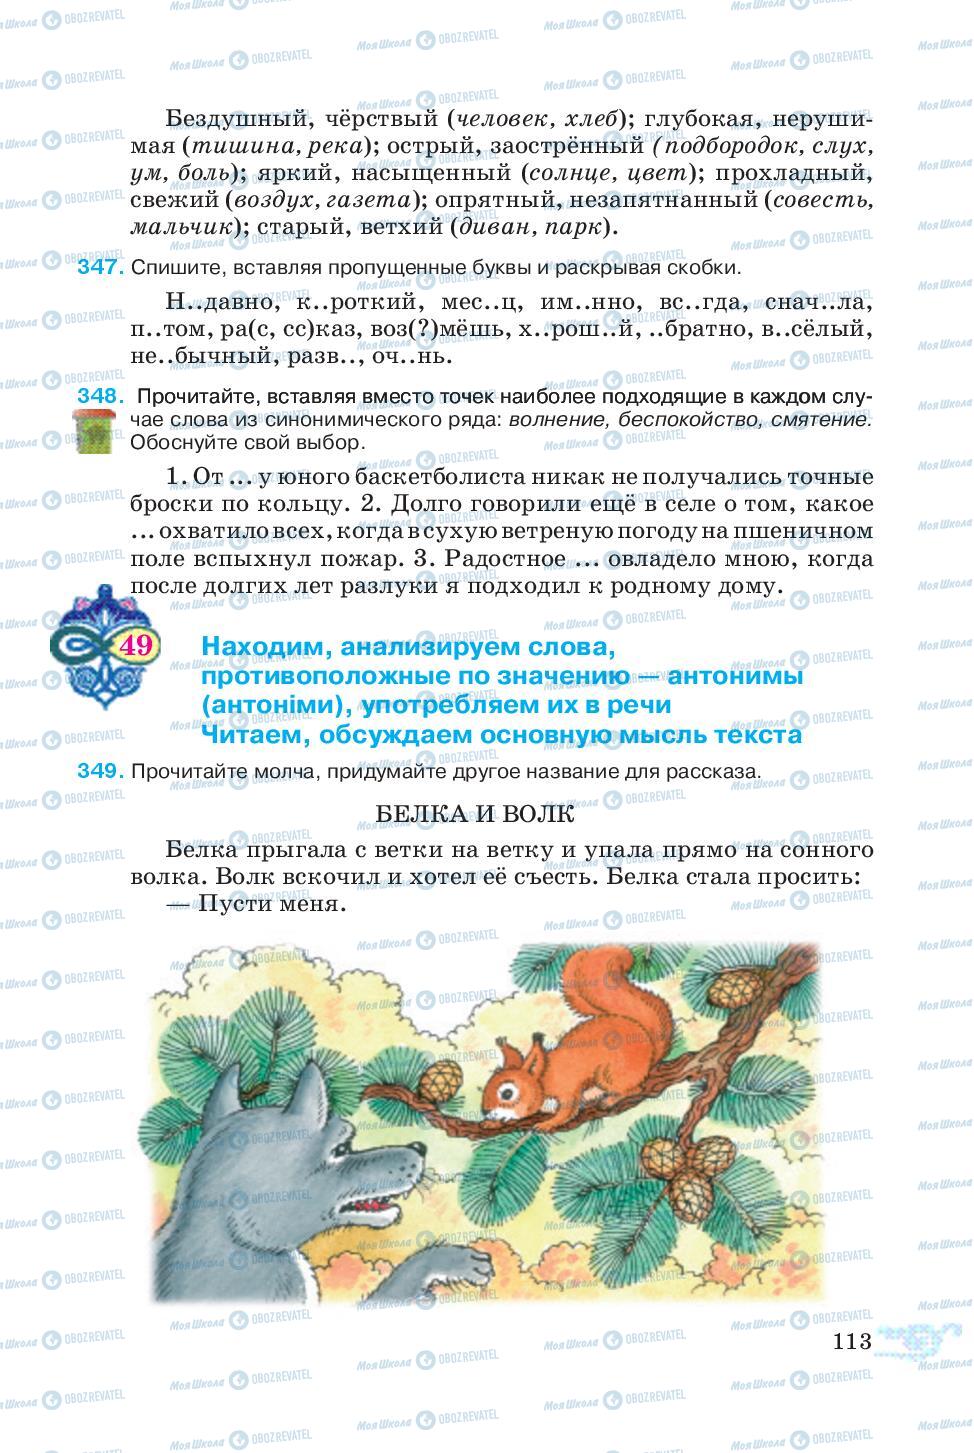 Учебники Русский язык 5 класс страница 113